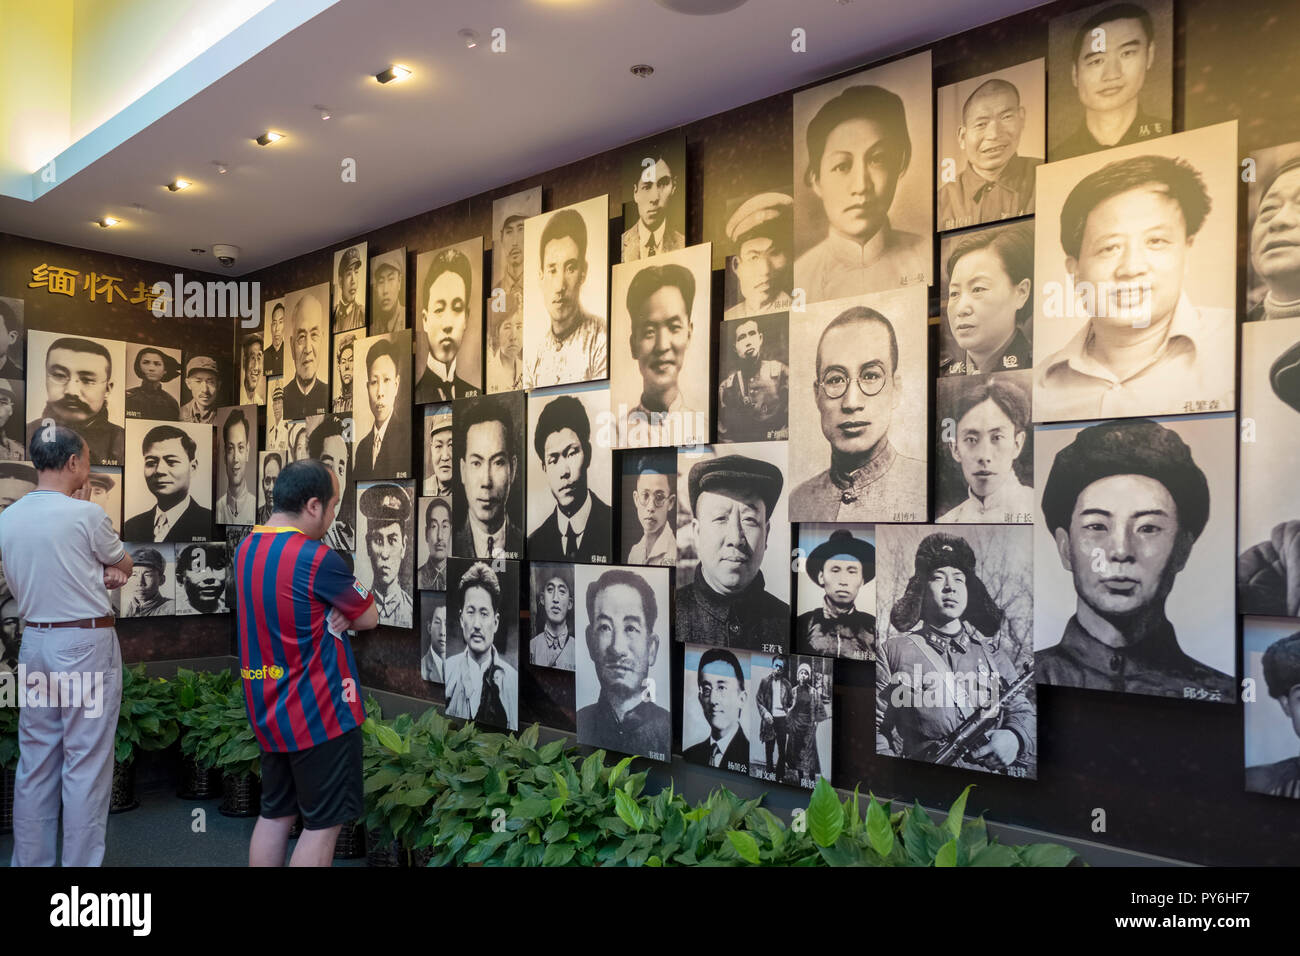 Des photographies dans la salle d'exposition, une partie de l'emplacement du premier Congrès national du Parti communiste chinois, Shanghai, Chine, Asie Banque D'Images